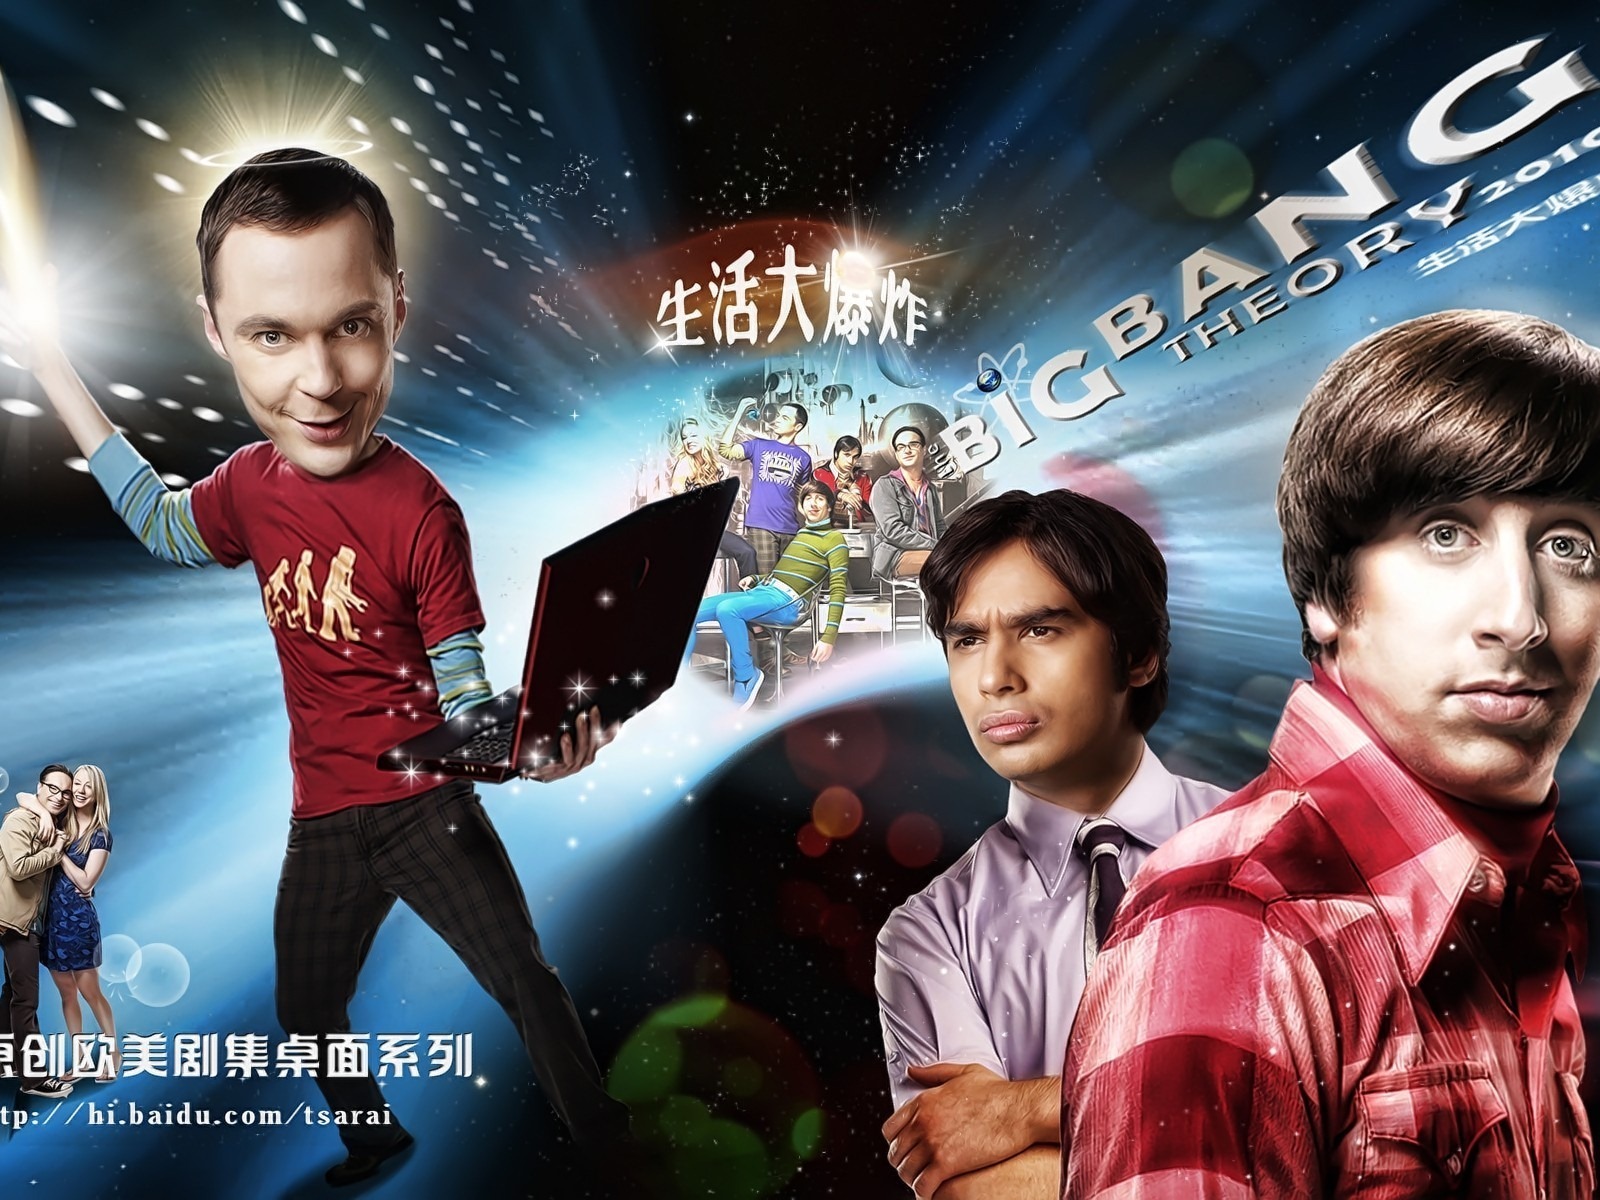 The Big Bang Theory 生活大爆炸 电视剧高清壁纸27 - 1600x1200